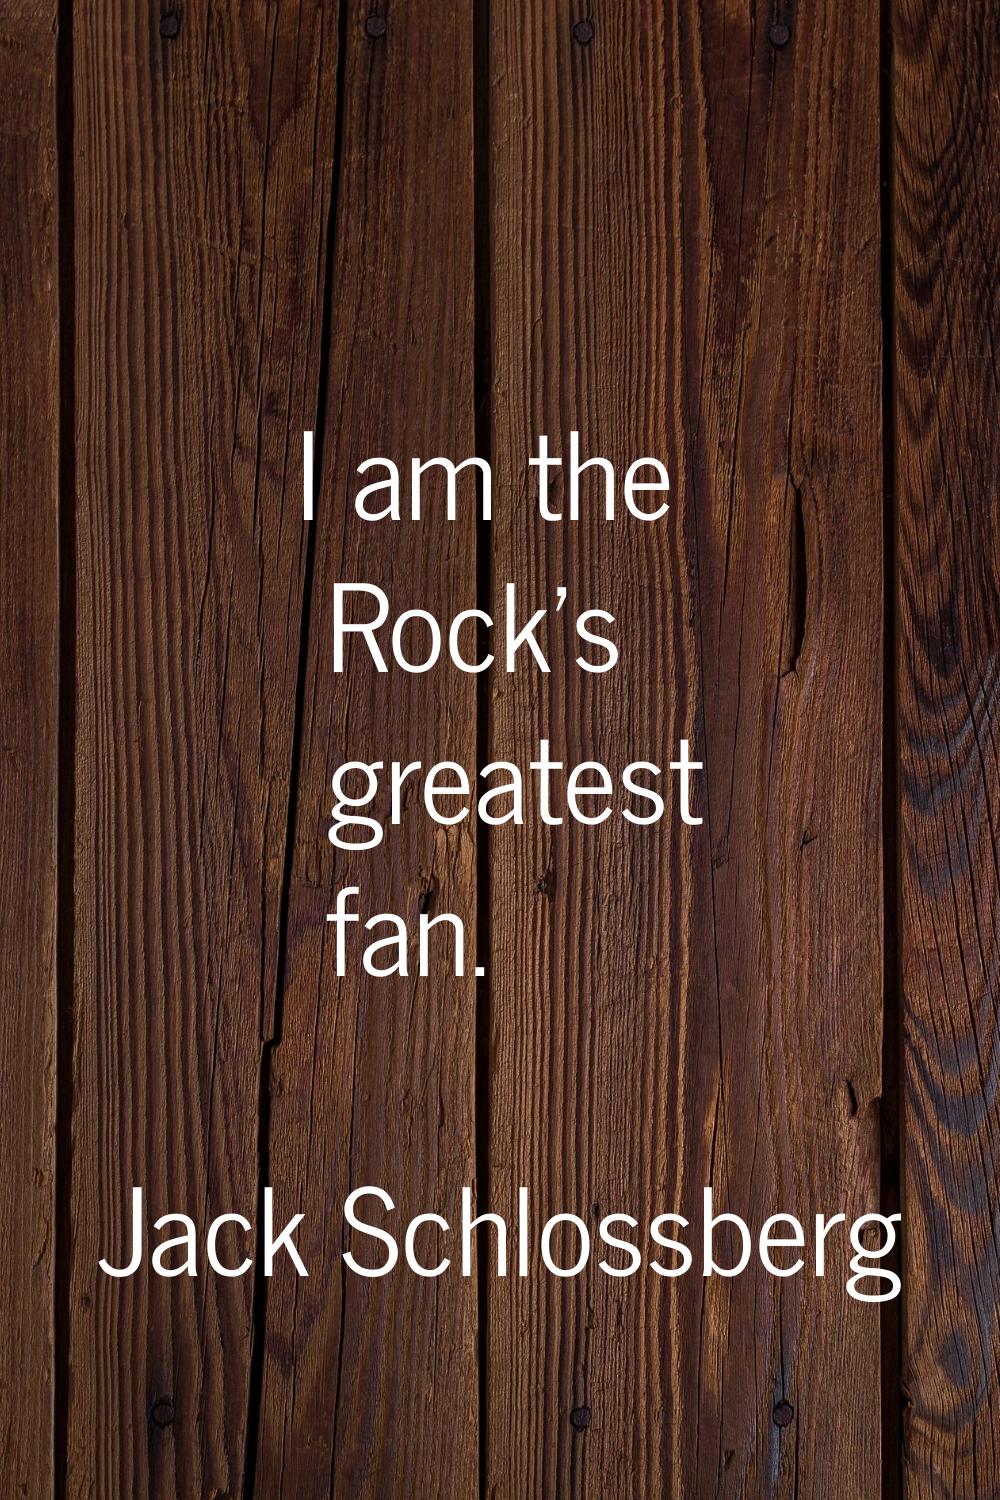 I am the Rock's greatest fan.